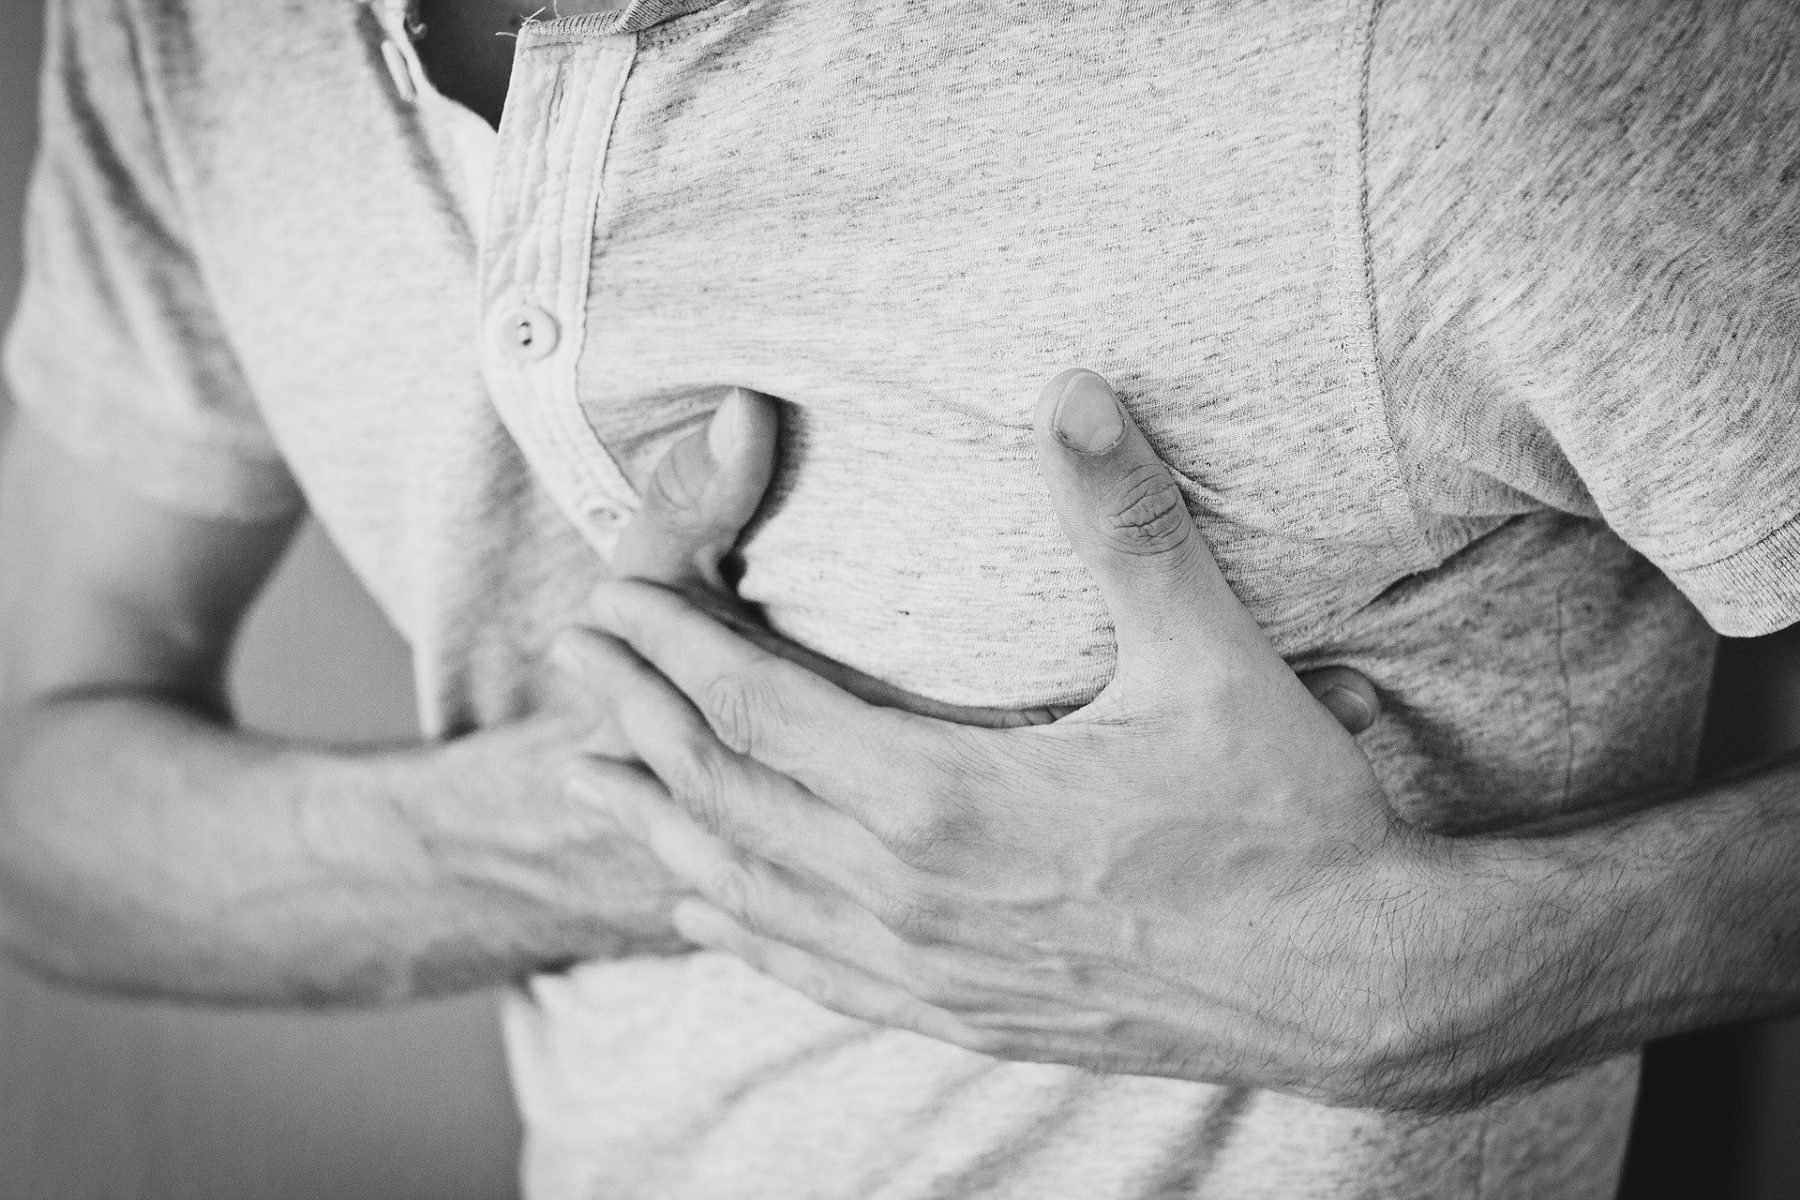 Λειτουργία καρδιάς: Ενέσιμο τζελ για την αποκατάσταση βλαβών της καρδιάς